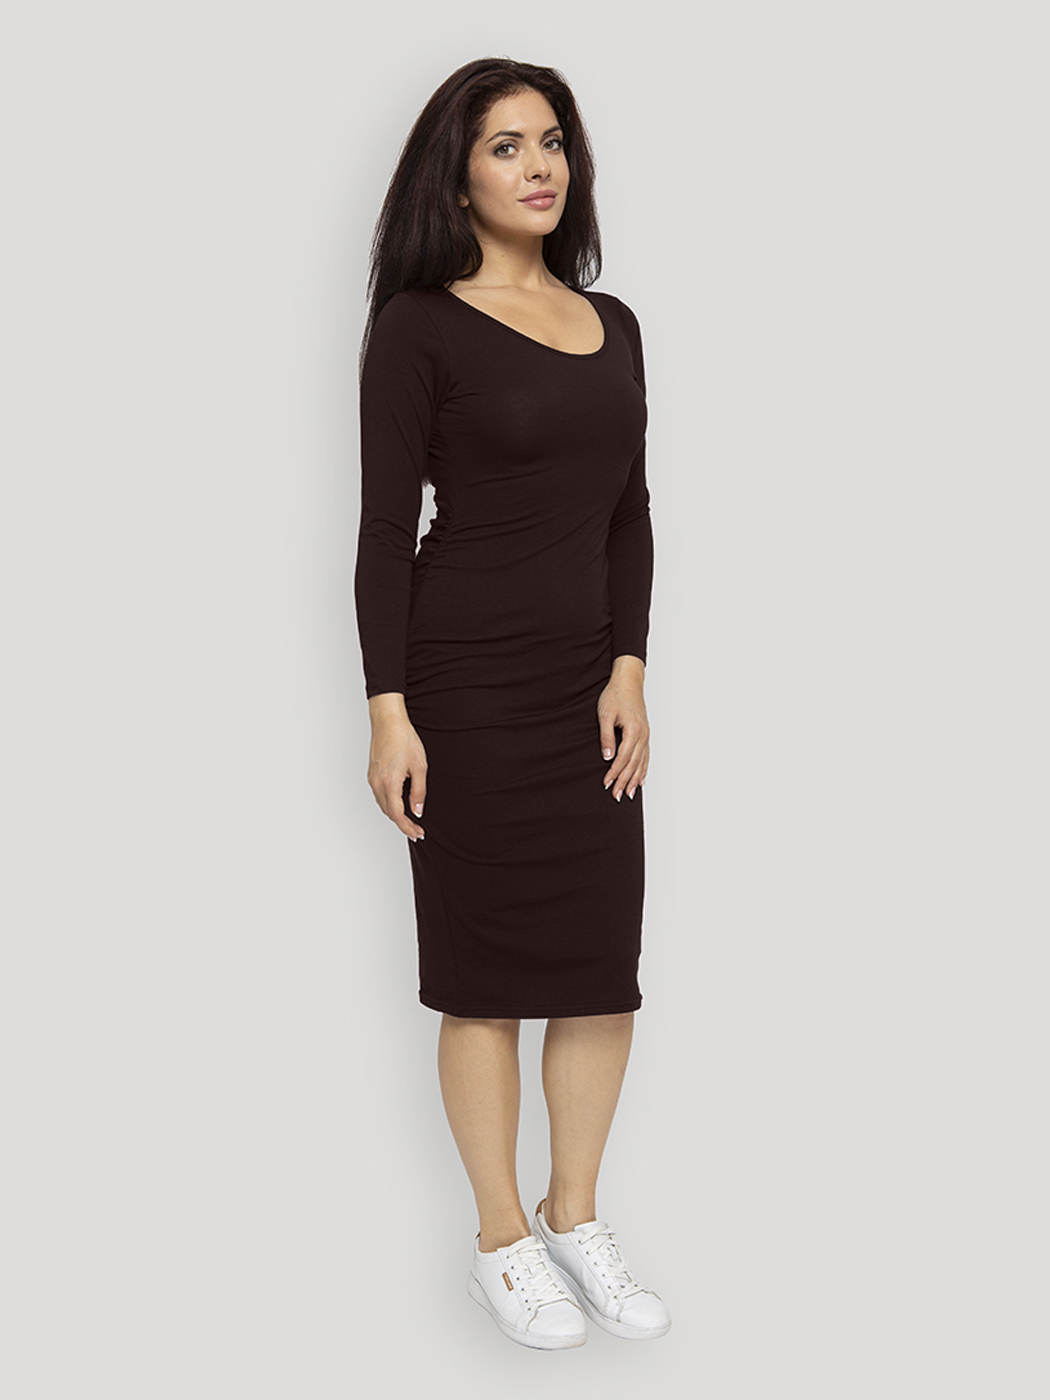 Платье для беременных женское Lunarable kelb005_ коричневое M